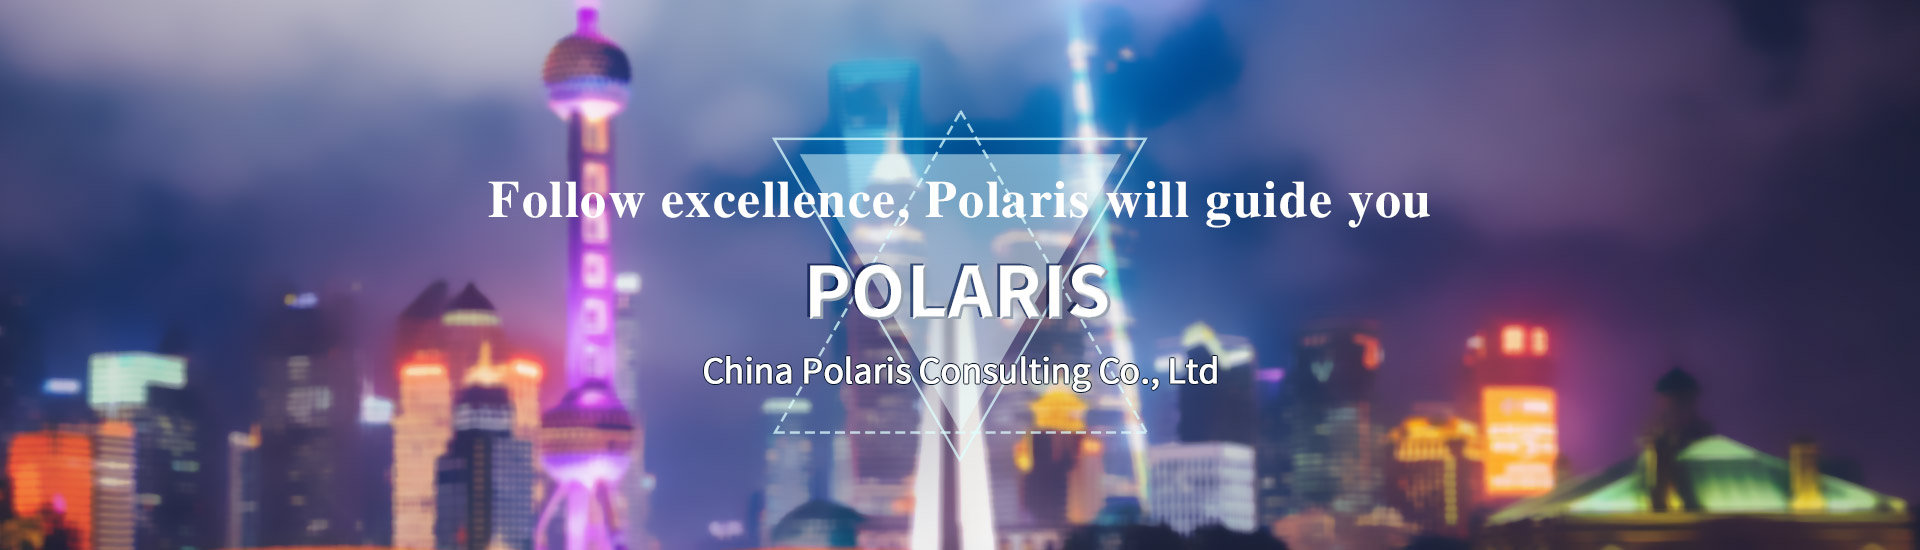 China Polaris Consulting Co., Ltd.